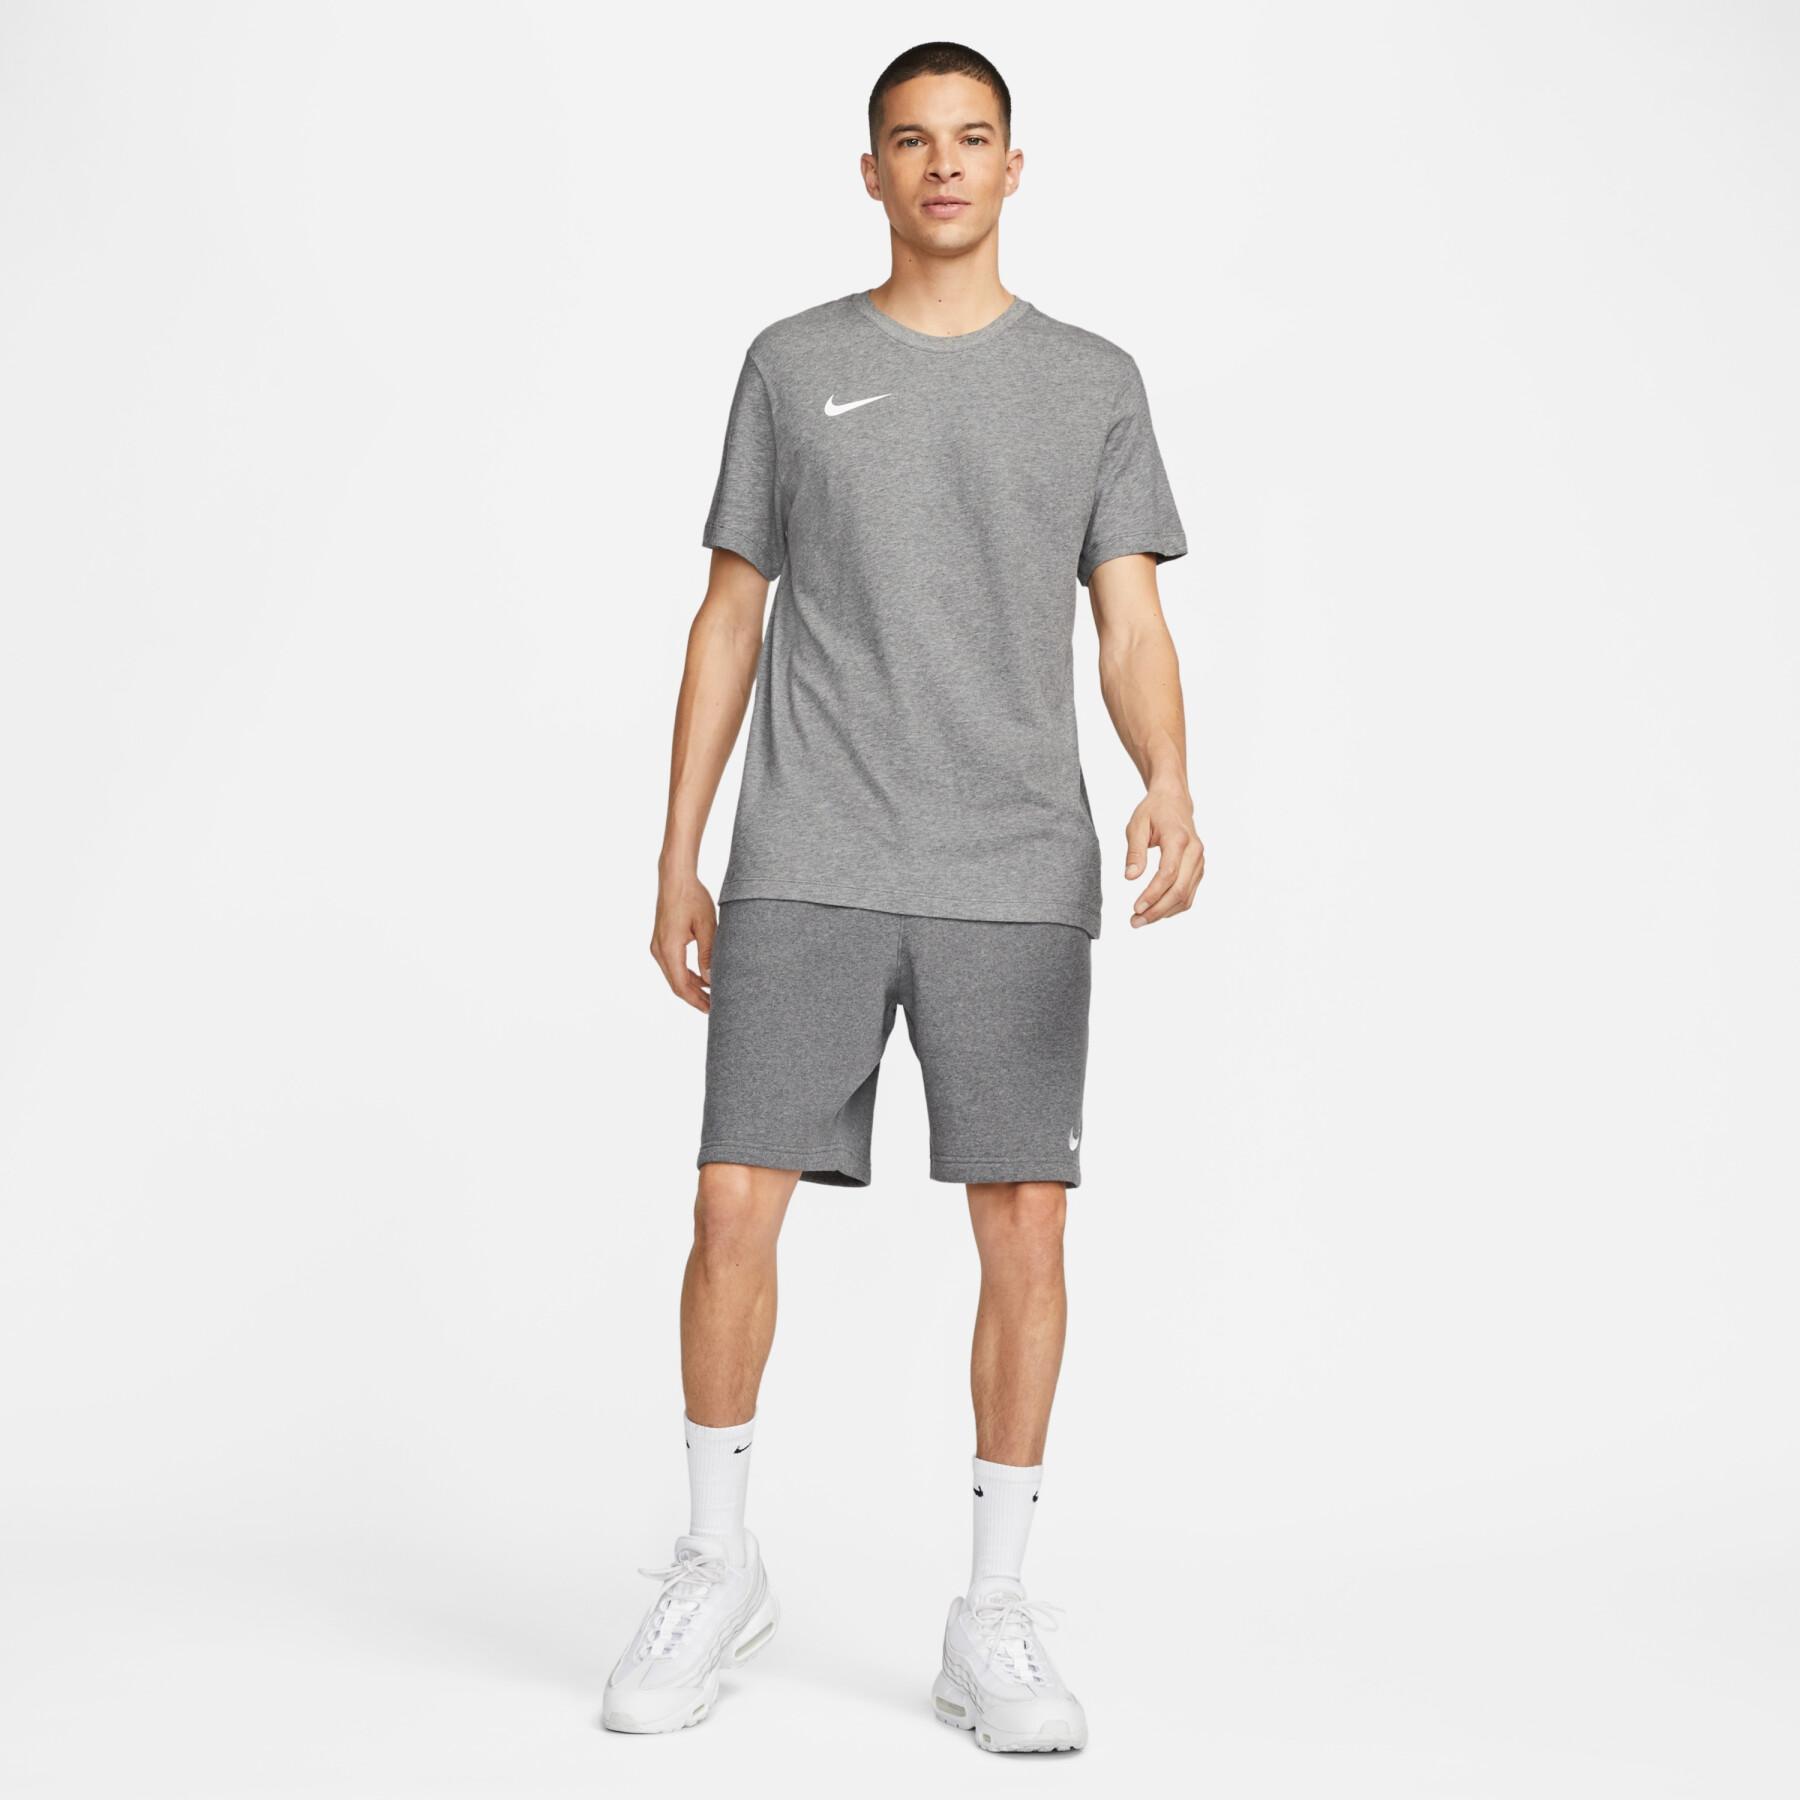 T-shirt Nike Dynamic Fit Park20